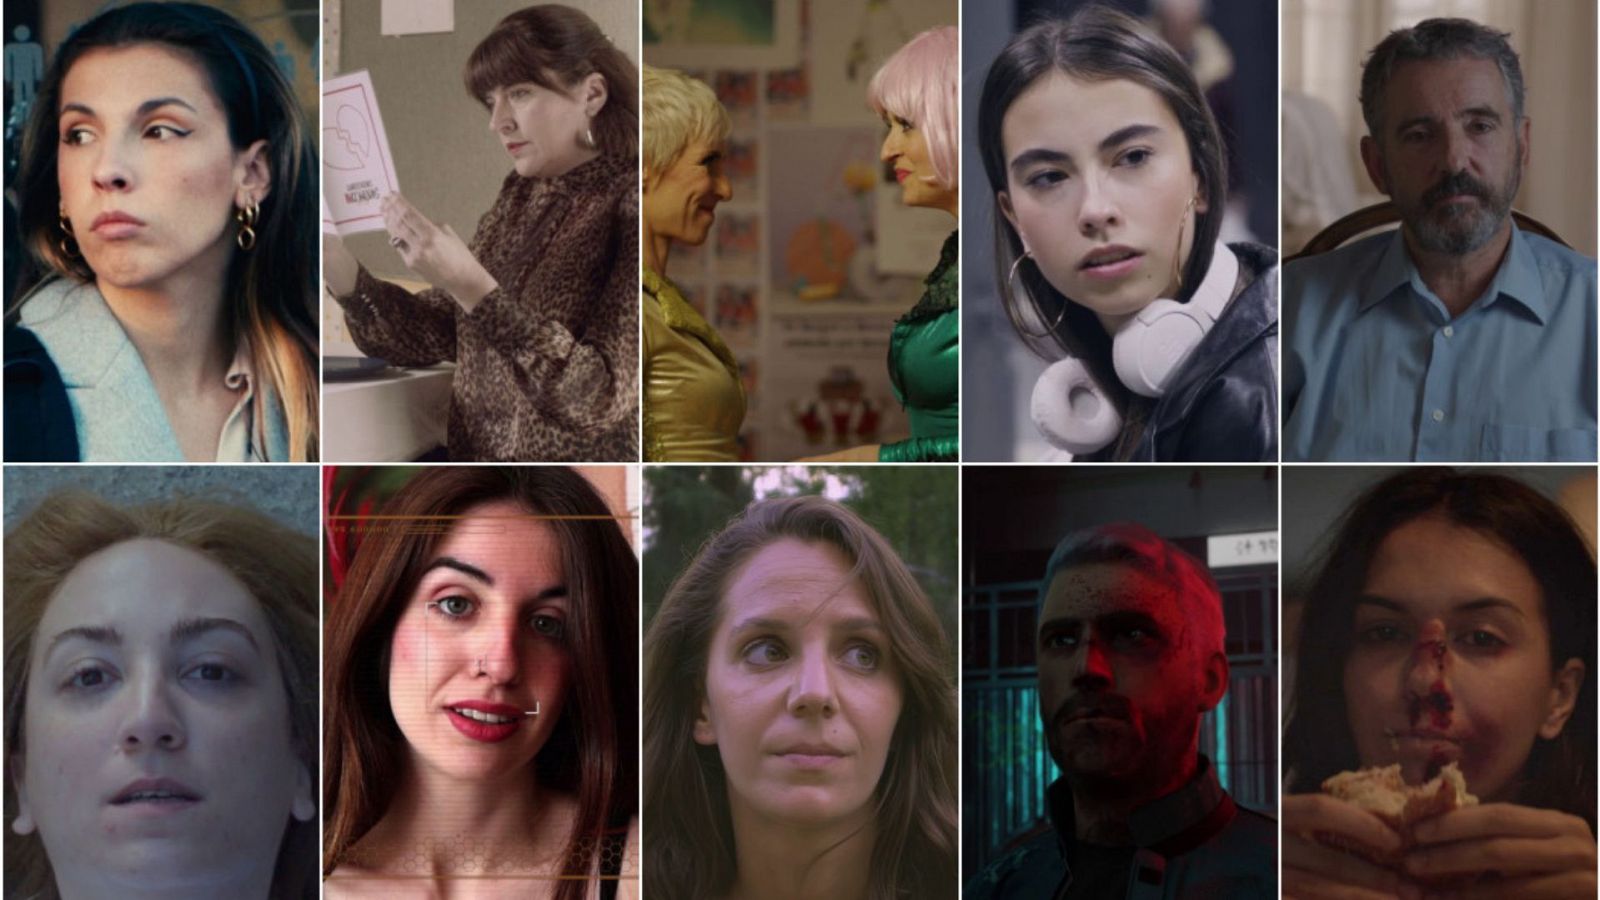 Mira los 10 finalistas del XV Premio de Cortos Cinematogrficos RNE-EGEDA y vota tu favorito